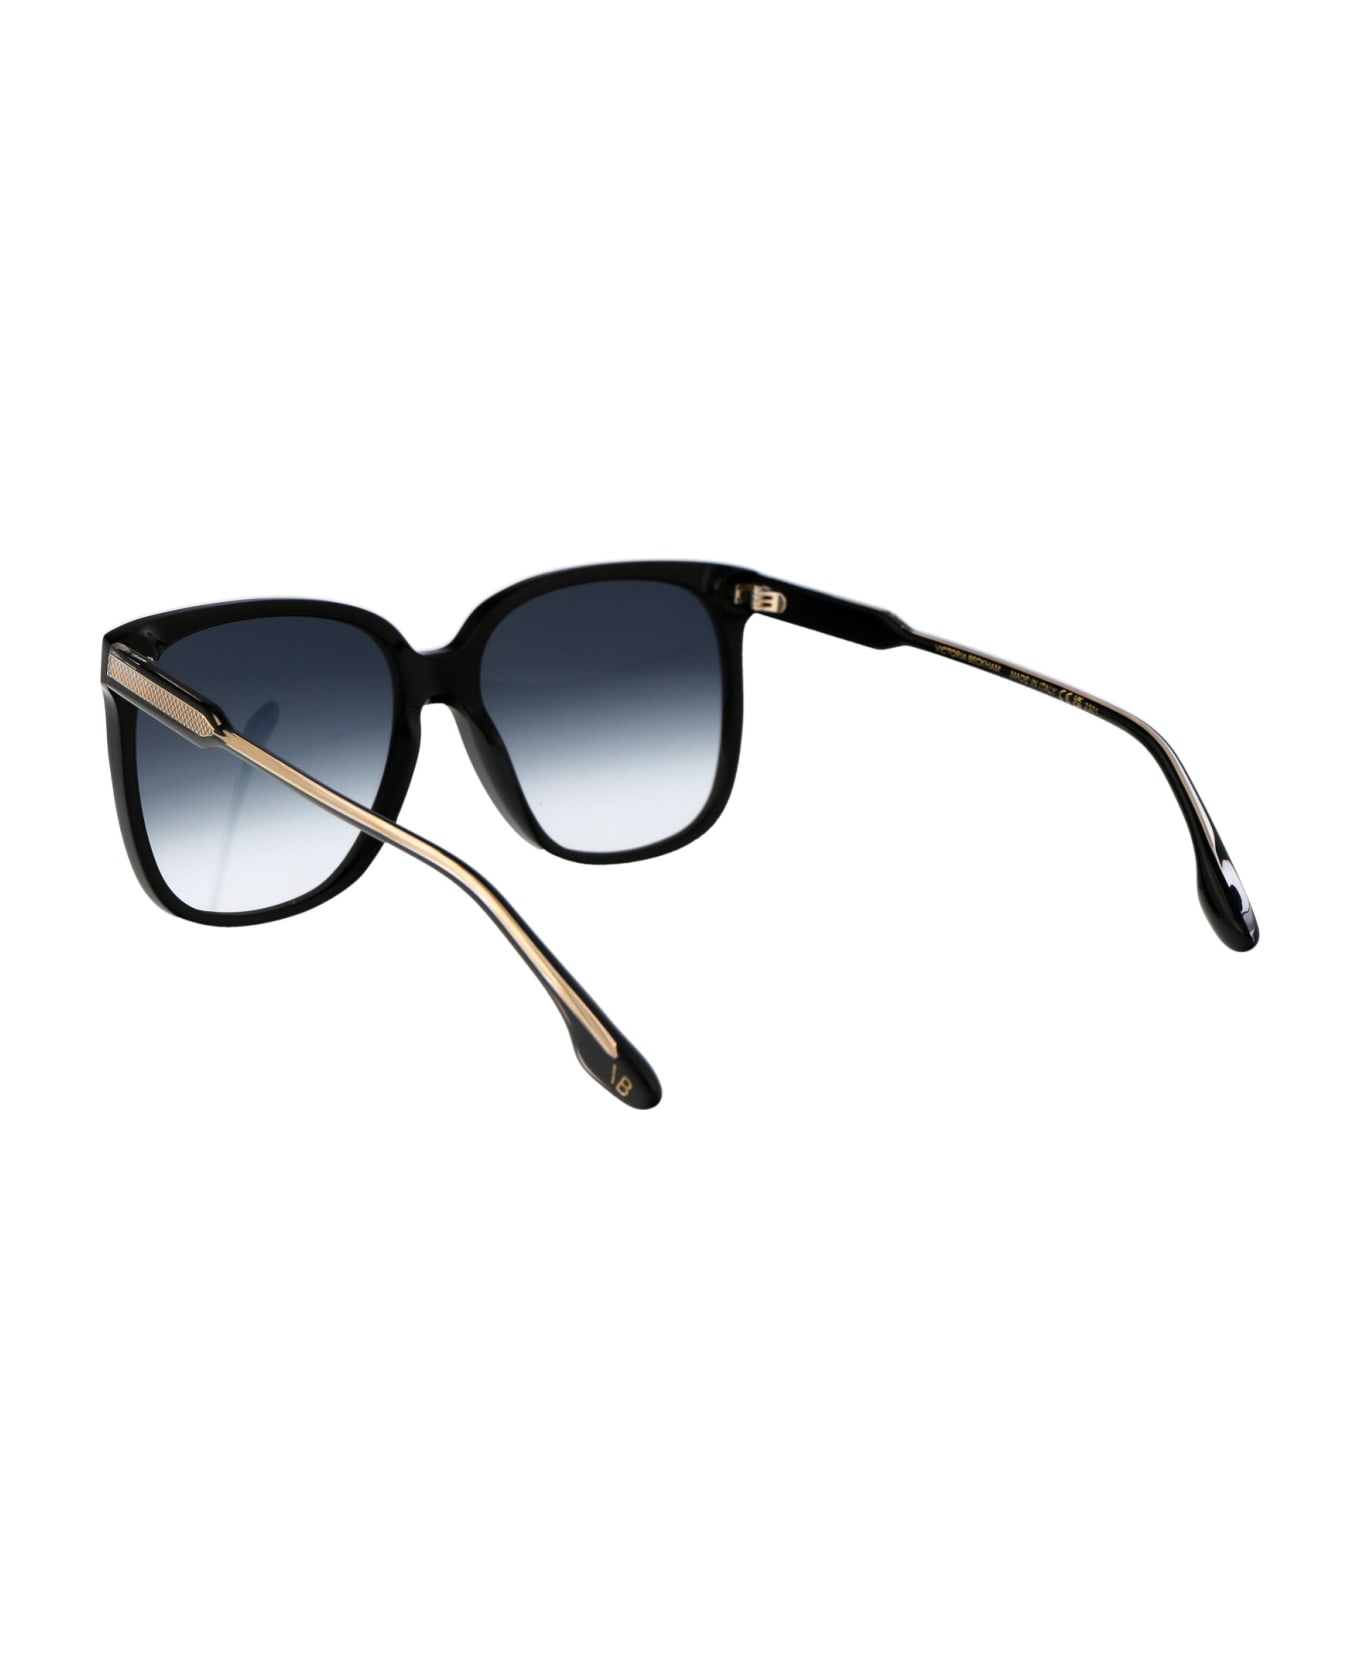 Victoria Beckham Vb610s Sunglasses - 001 BLACK